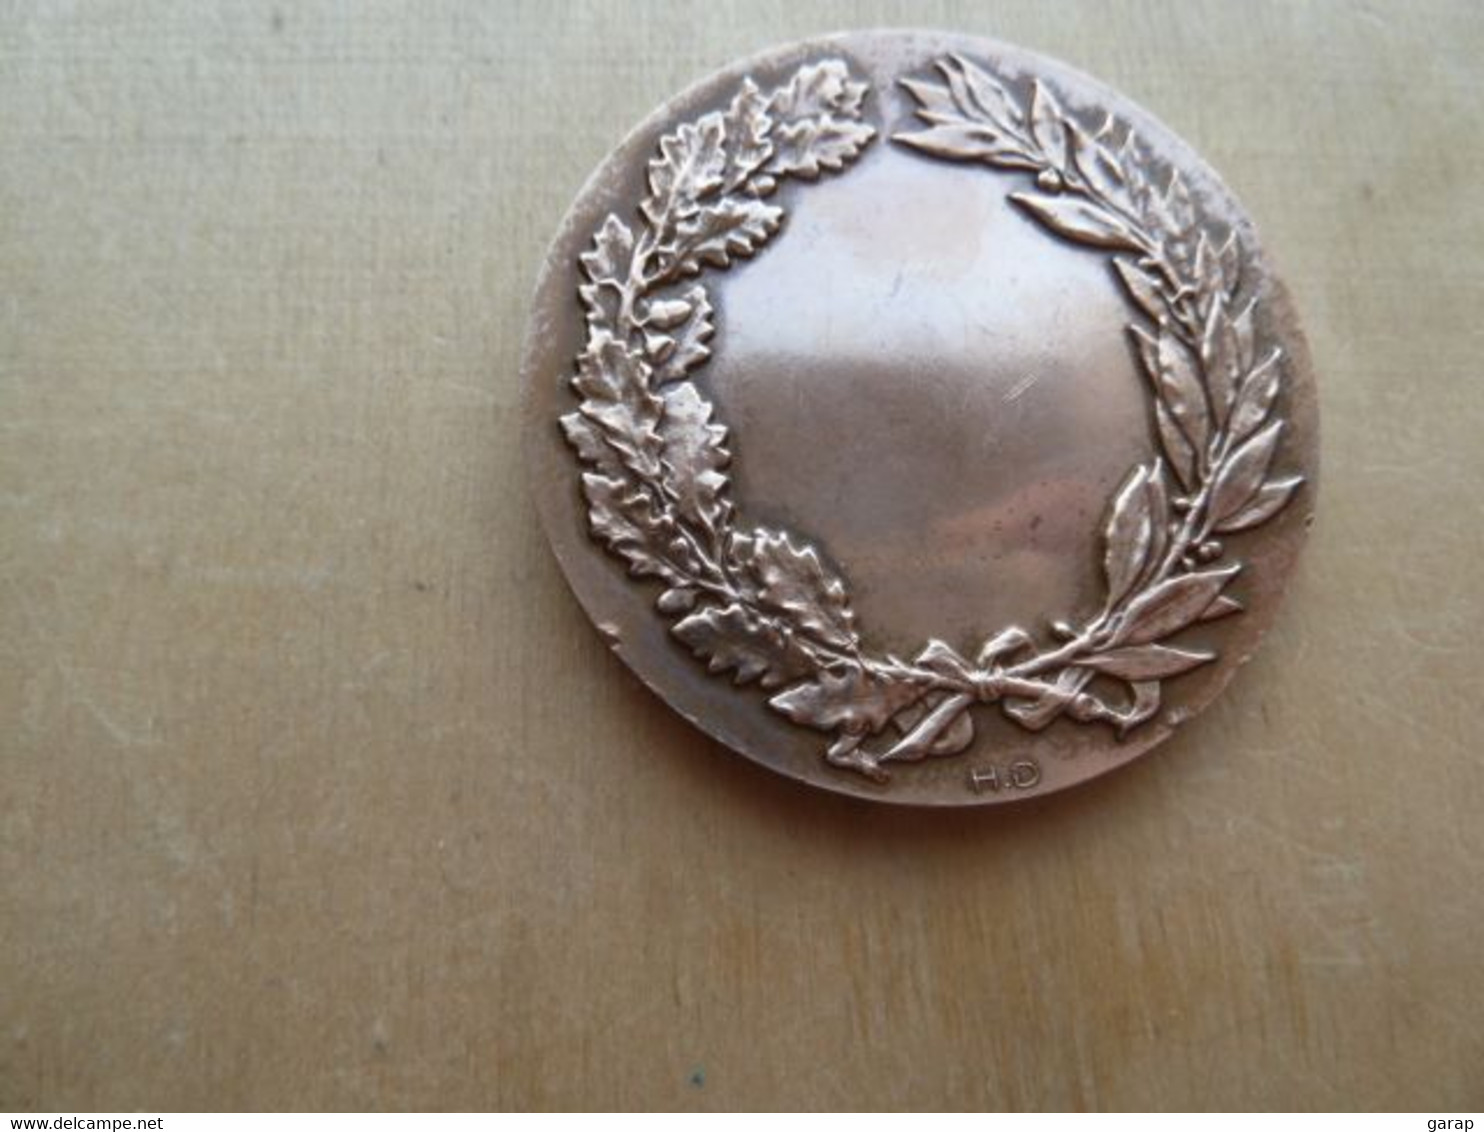 DA-047 Médaille Bronze 1968 (gravé Sur Tranche) Pétanque Signée M.Demey,diamètre=49mm Poids=69,10g - Boule/Pétanque